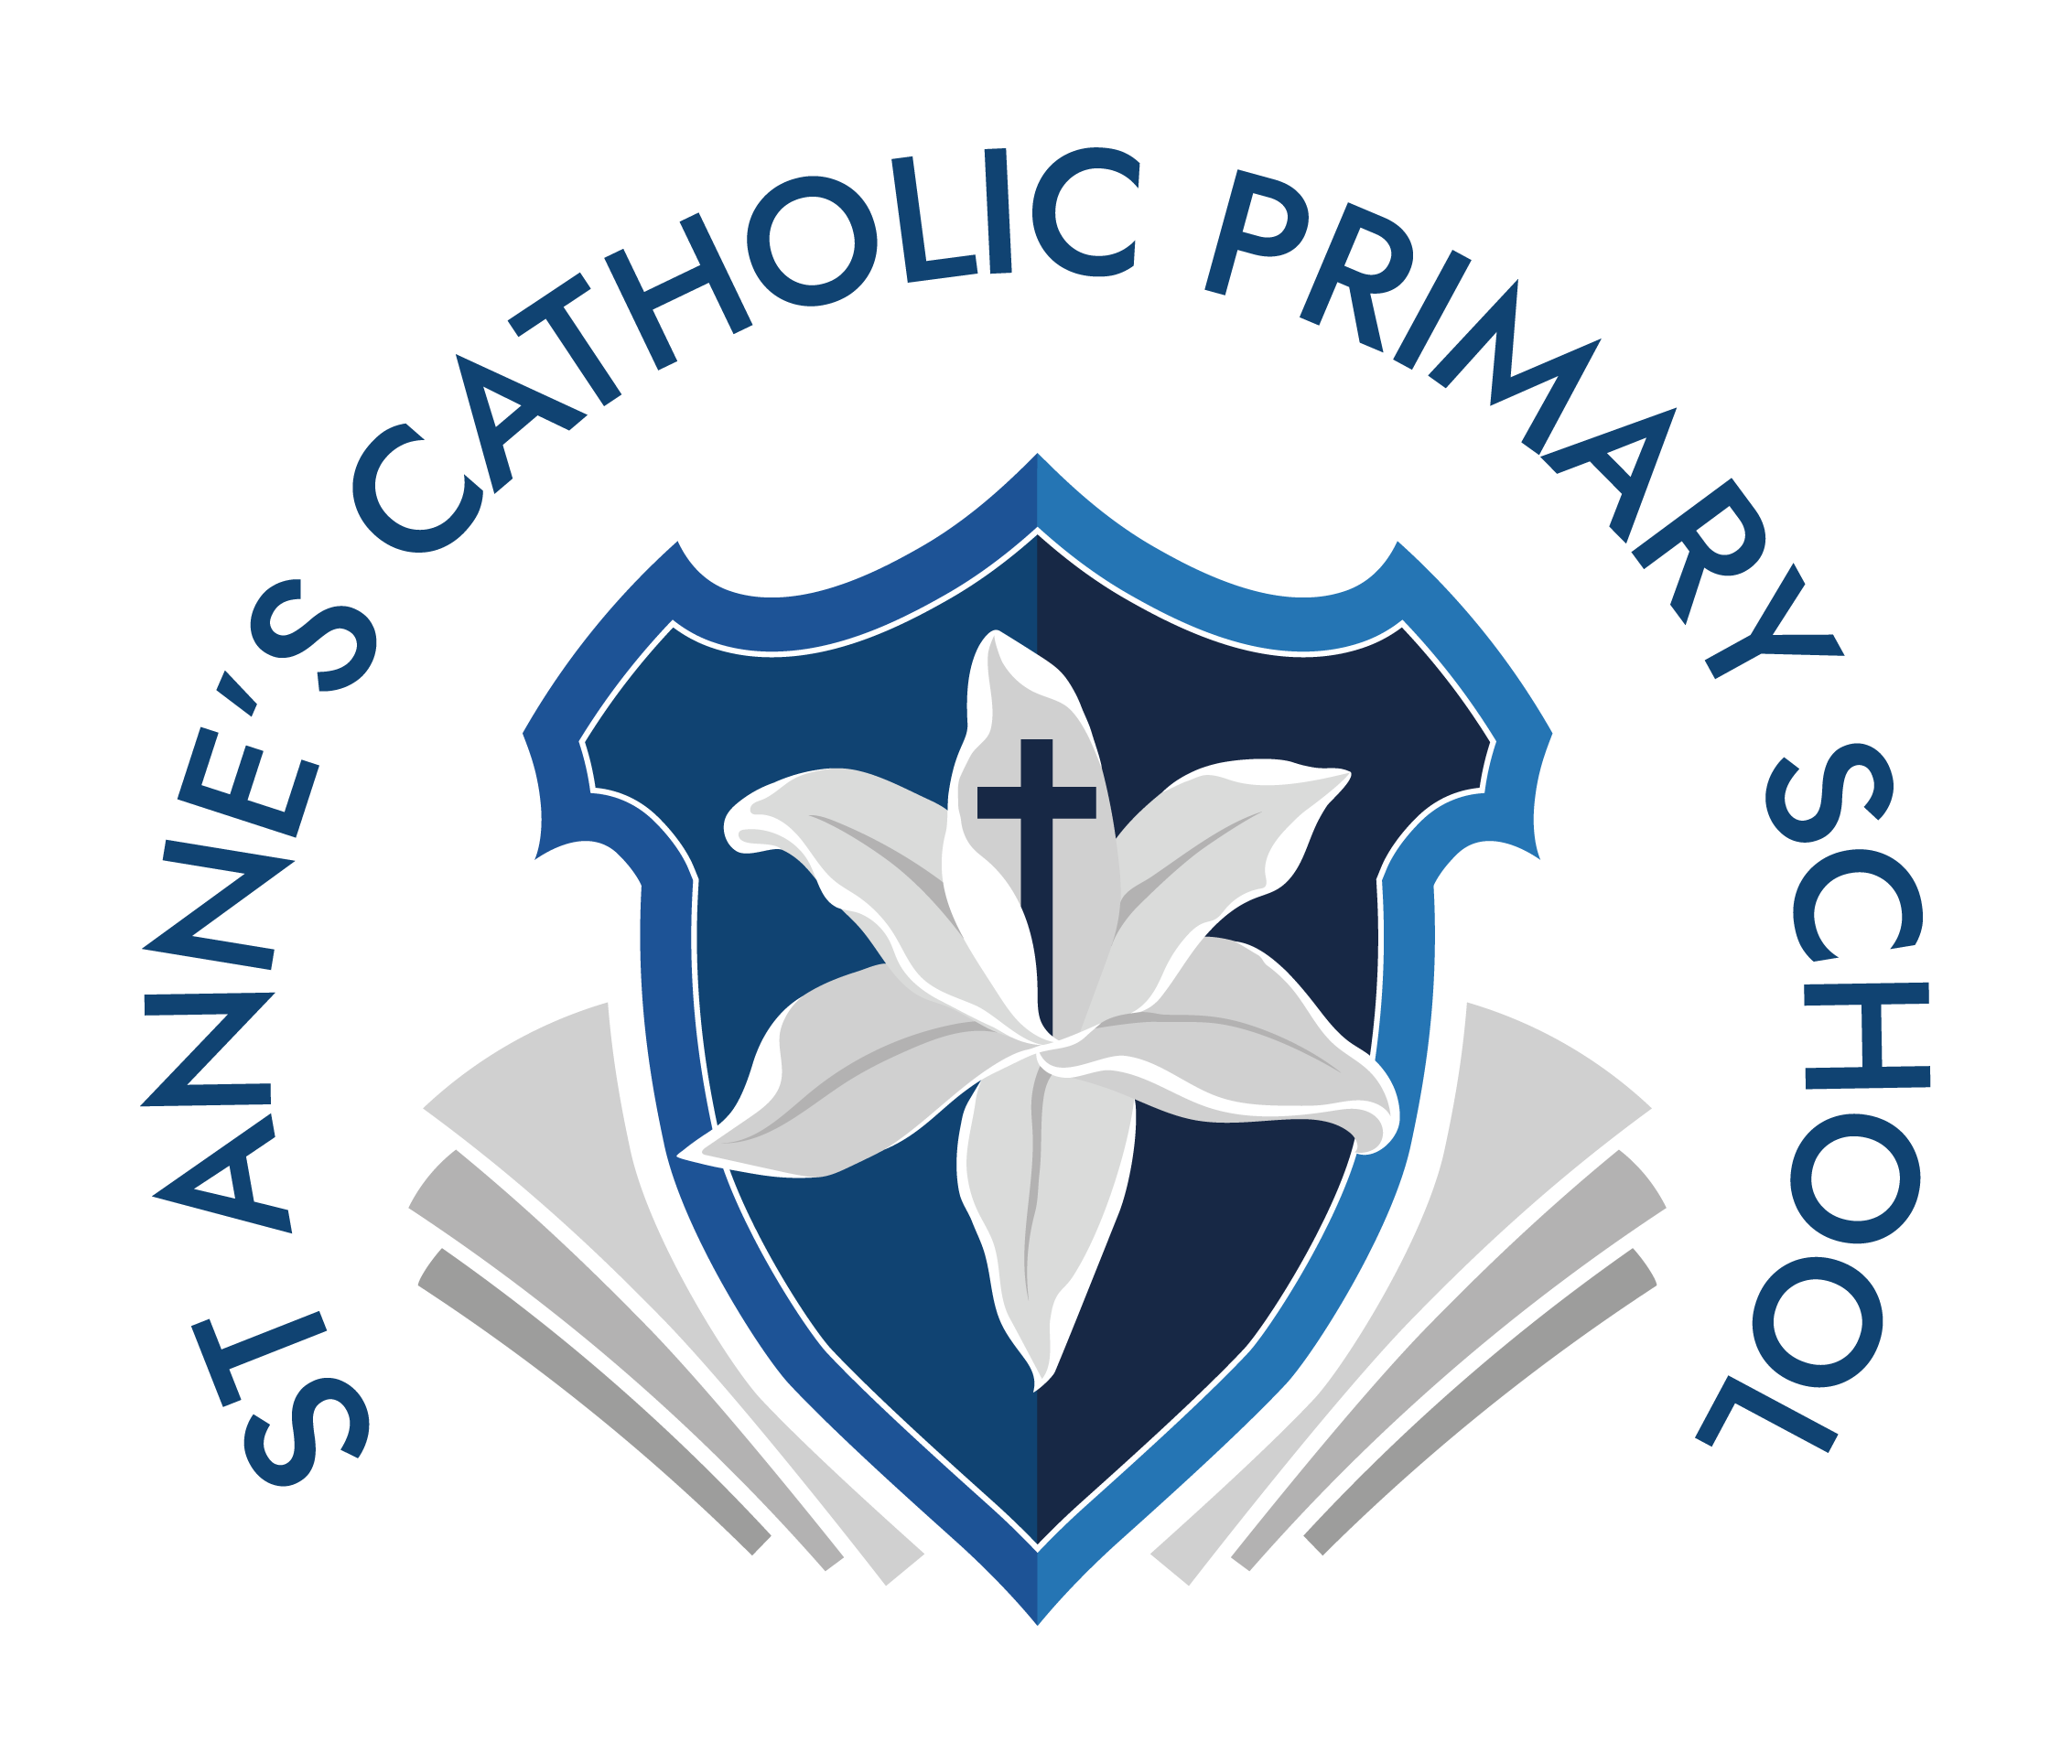 St. Anne's Catholic Primary School